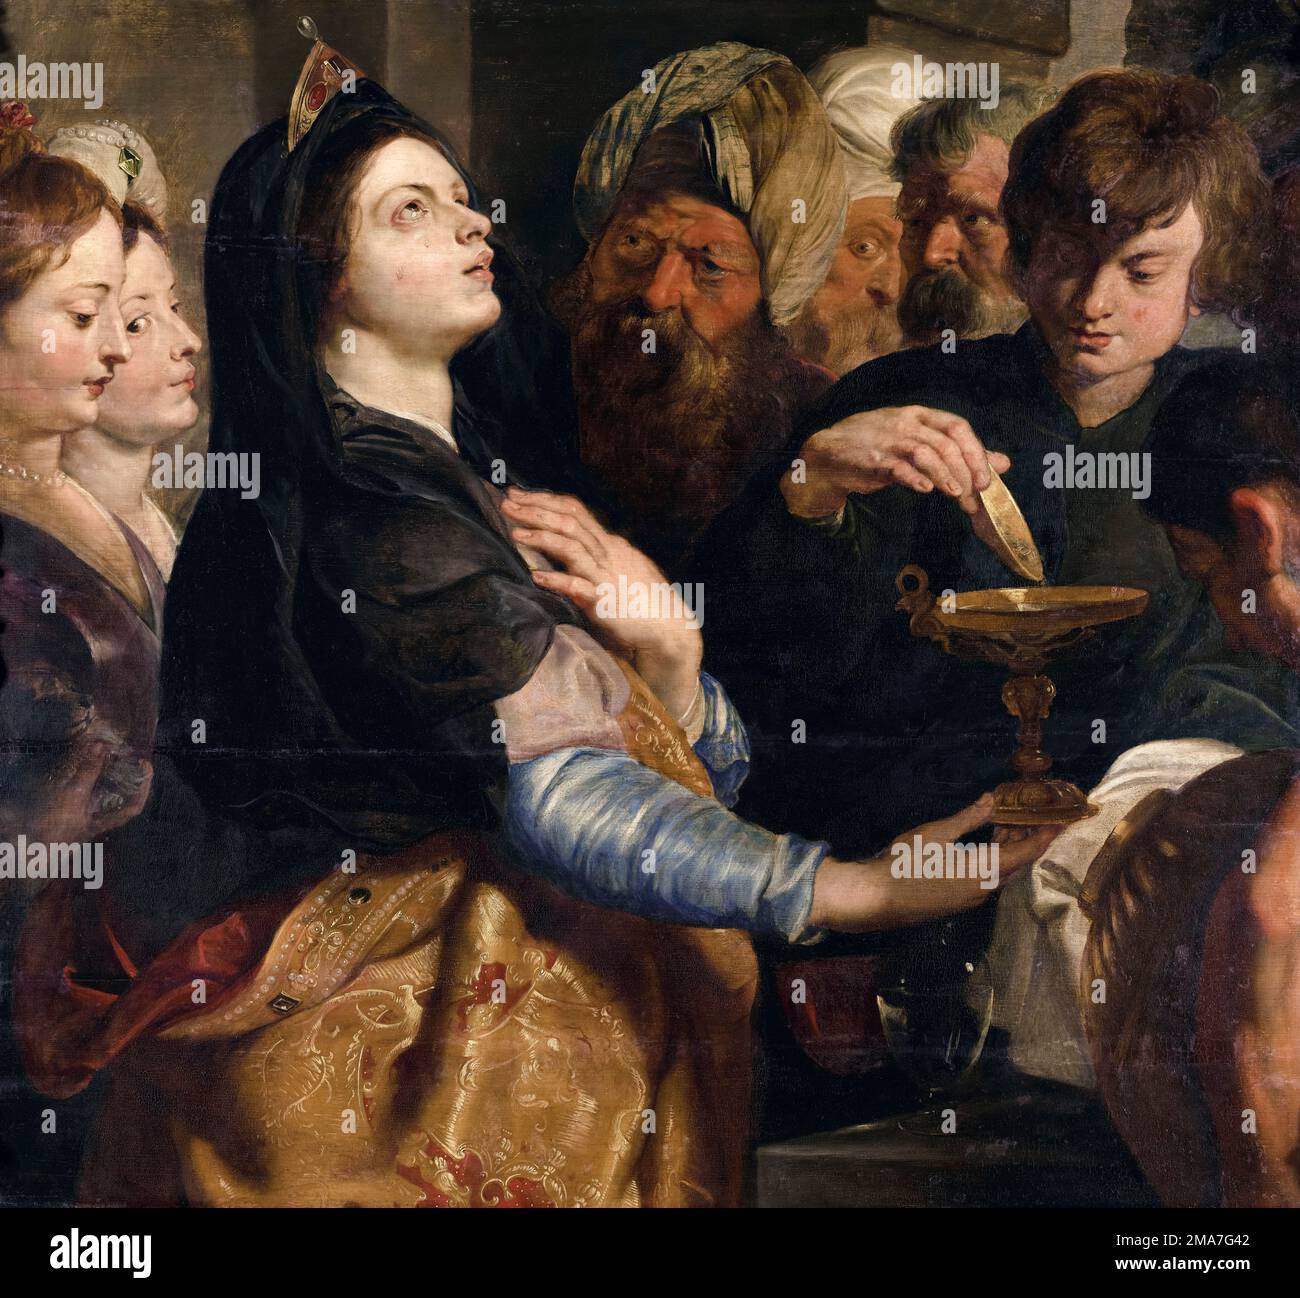 Peter Paul Rubens, dévotion d'Artemisia, peinture à l'huile sur bois, 1615-1616 Banque D'Images